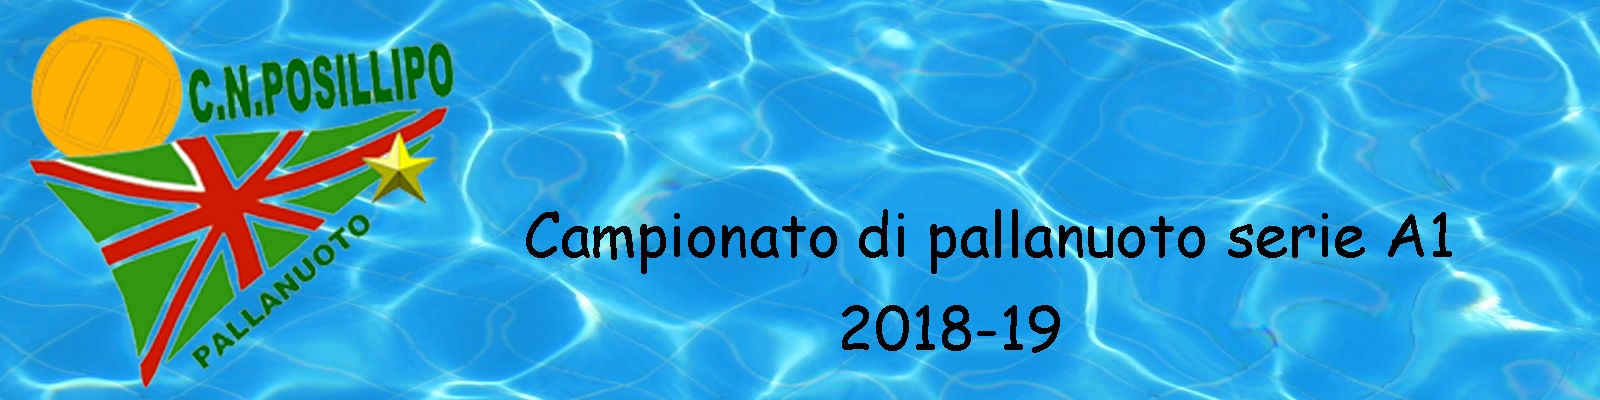 Posillipo anno 2018-19